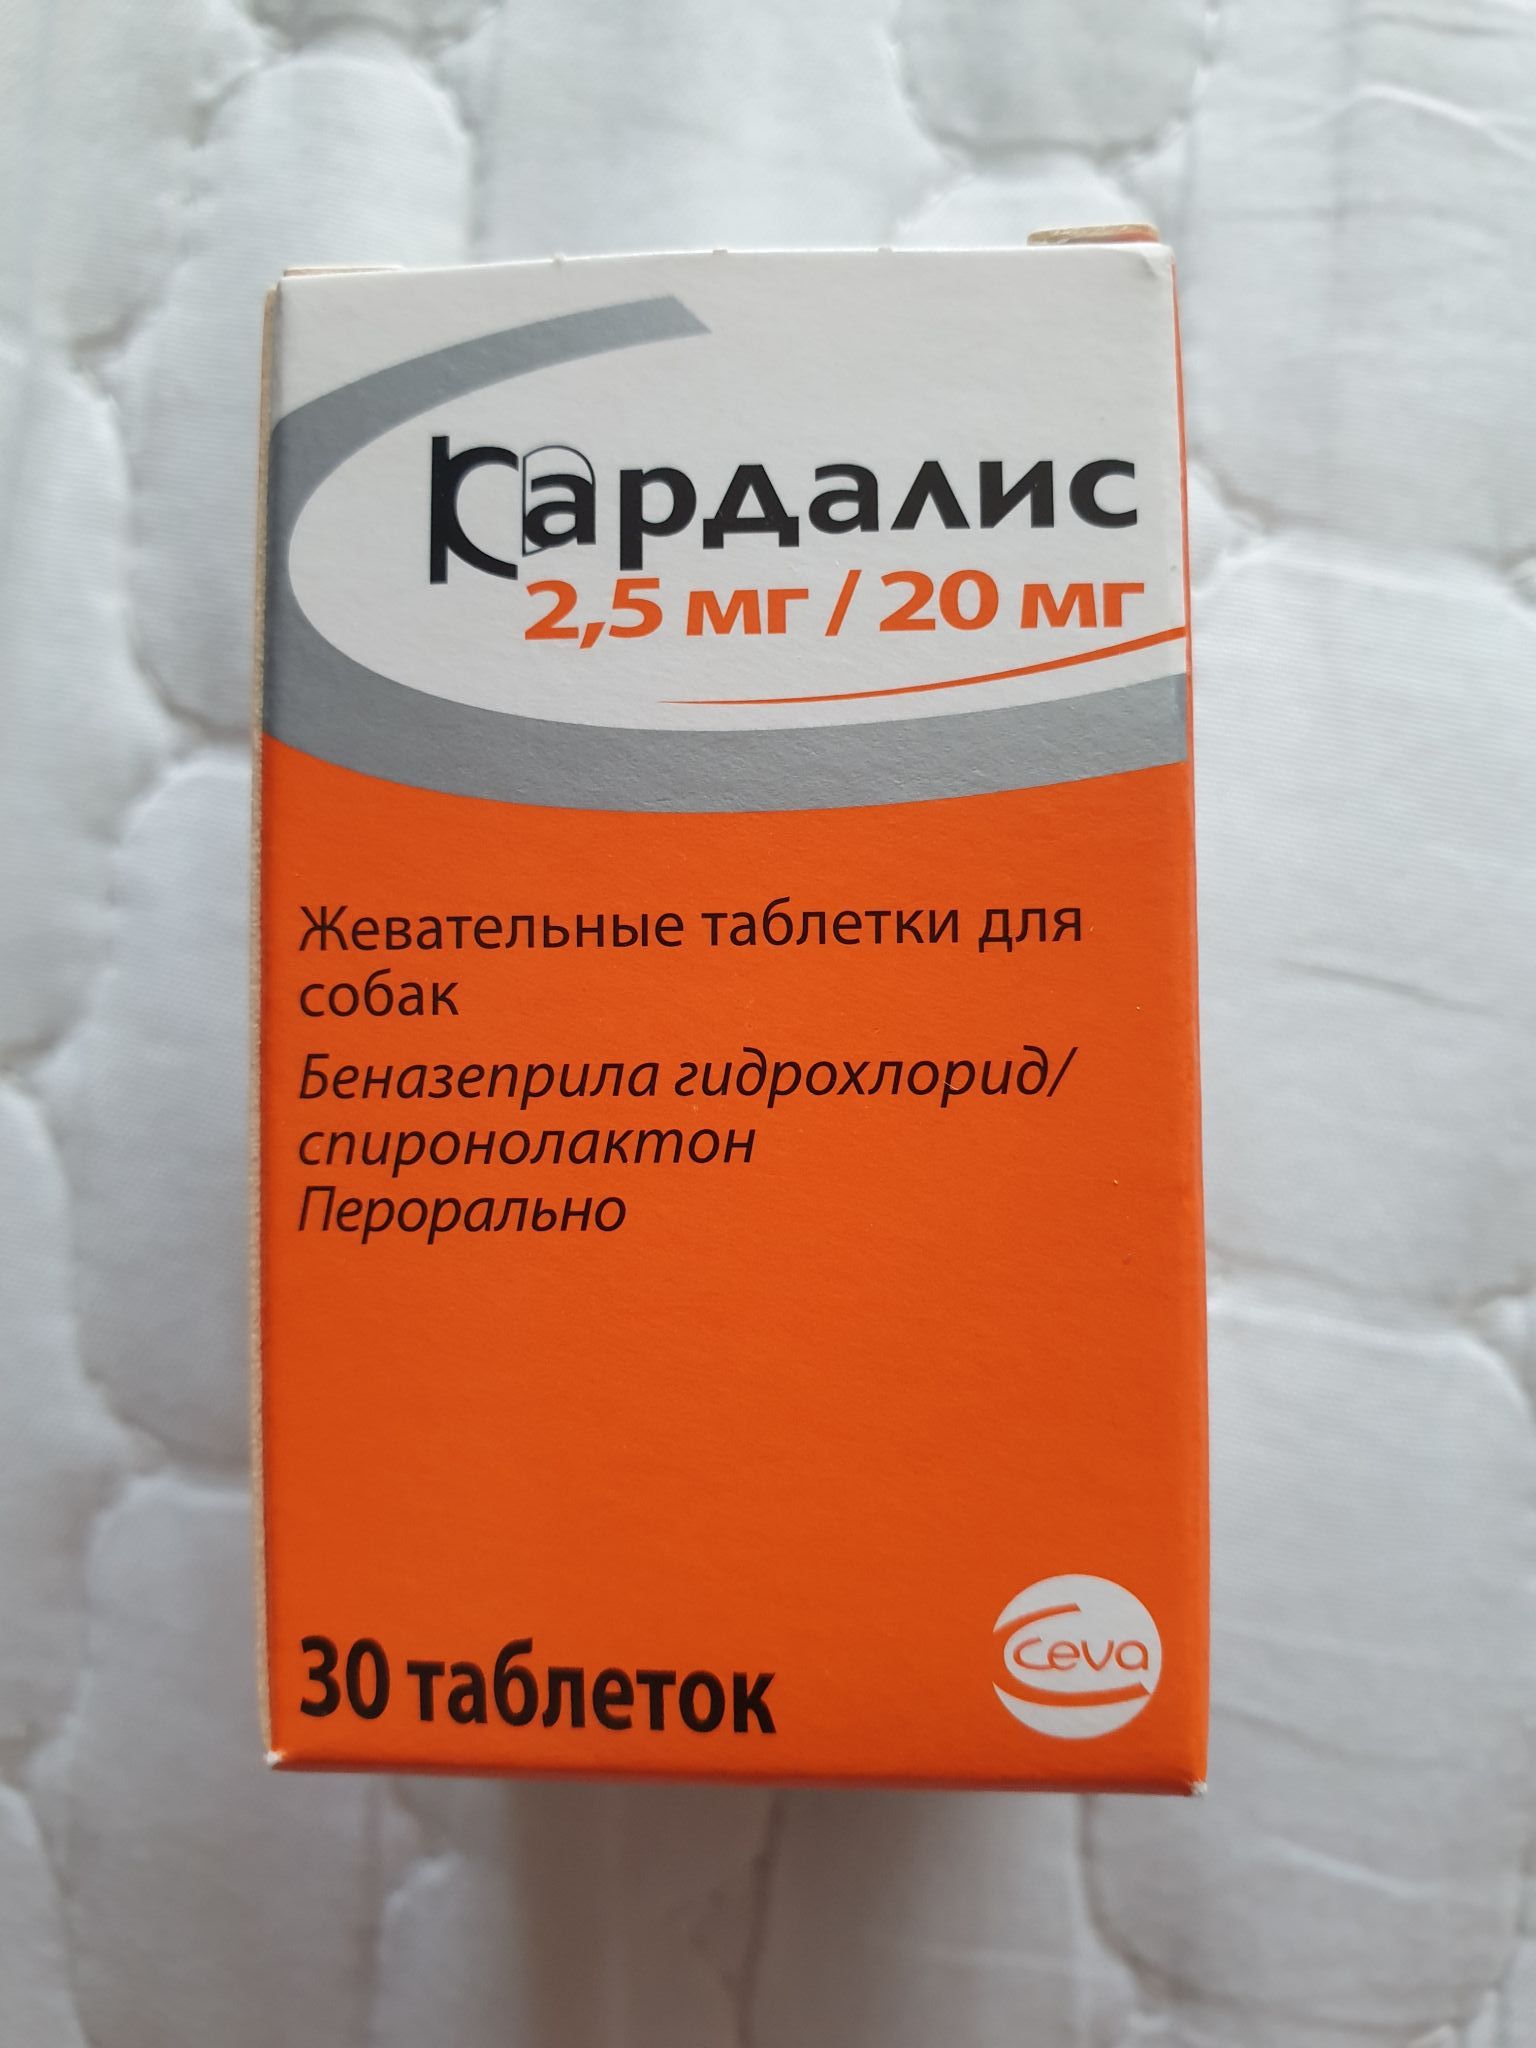 Купить кардалис 2.5 в москве